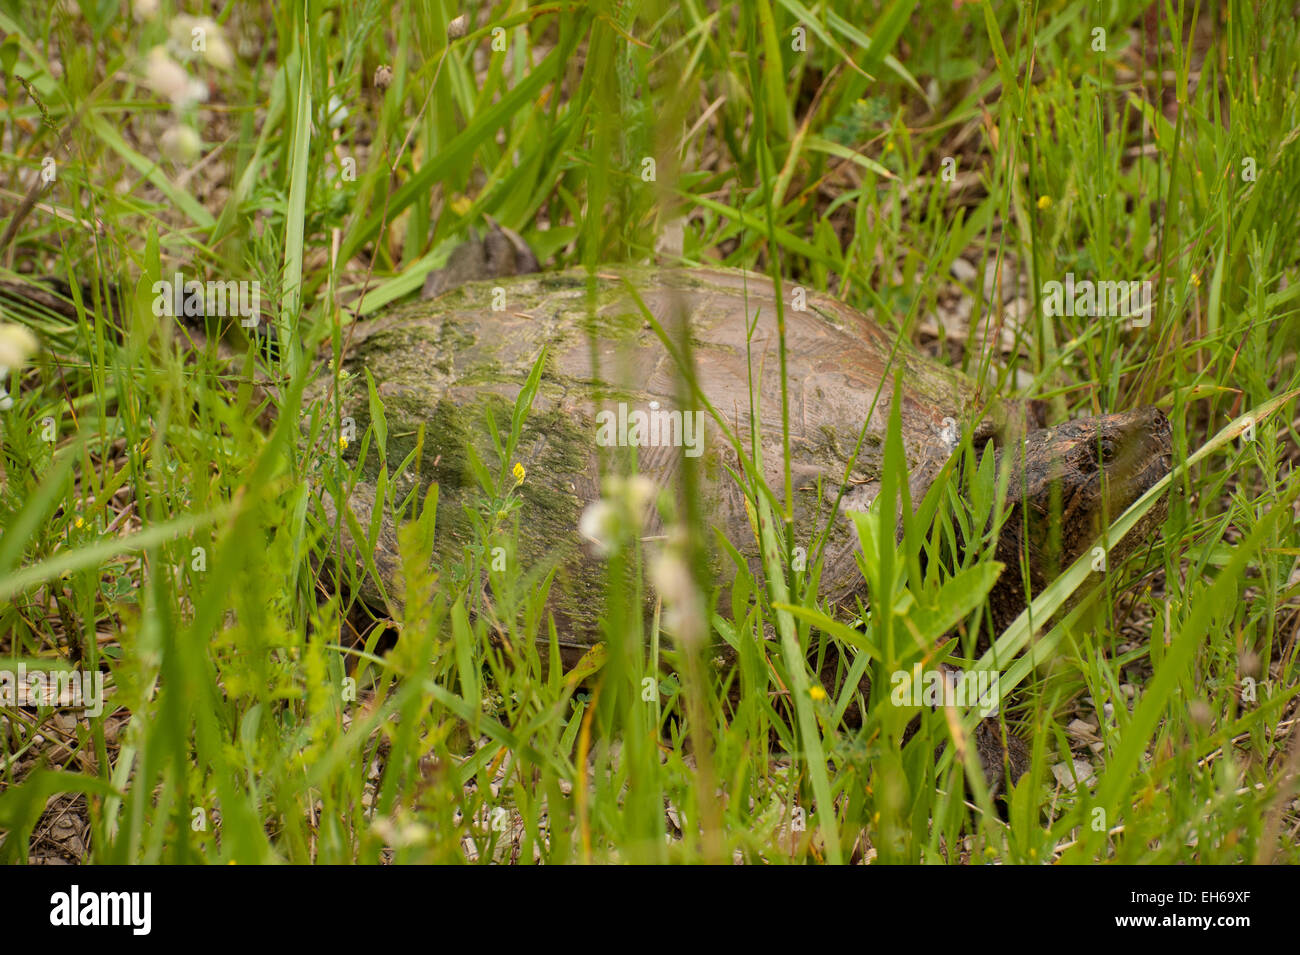 Una comune tartaruga snapping (Chelydra serpentina) ben nascosta tra le erbe in riva al lago sulla penisola di Bruce, in Ontario. Foto Stock